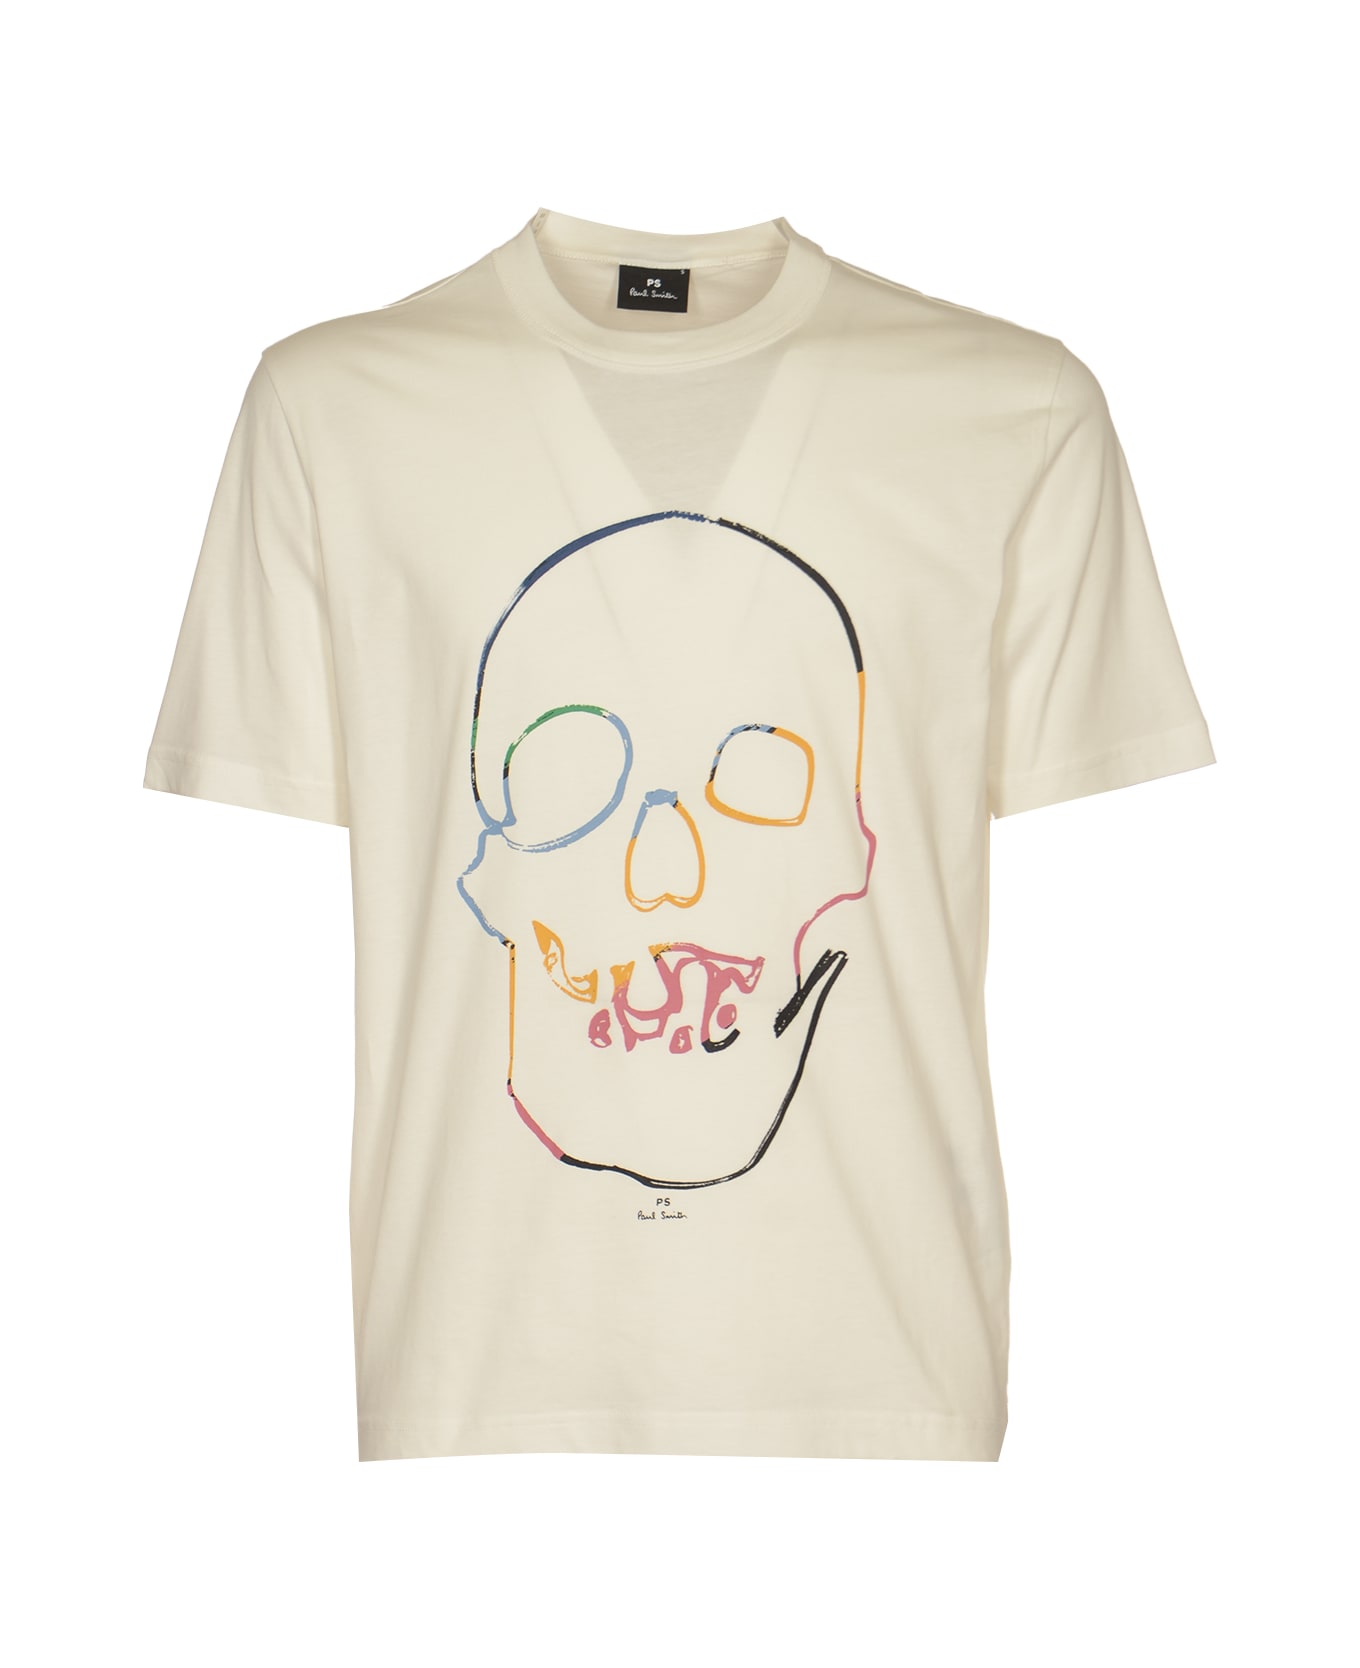 Paul Smith Linear Skull T-shirt - White シャツ